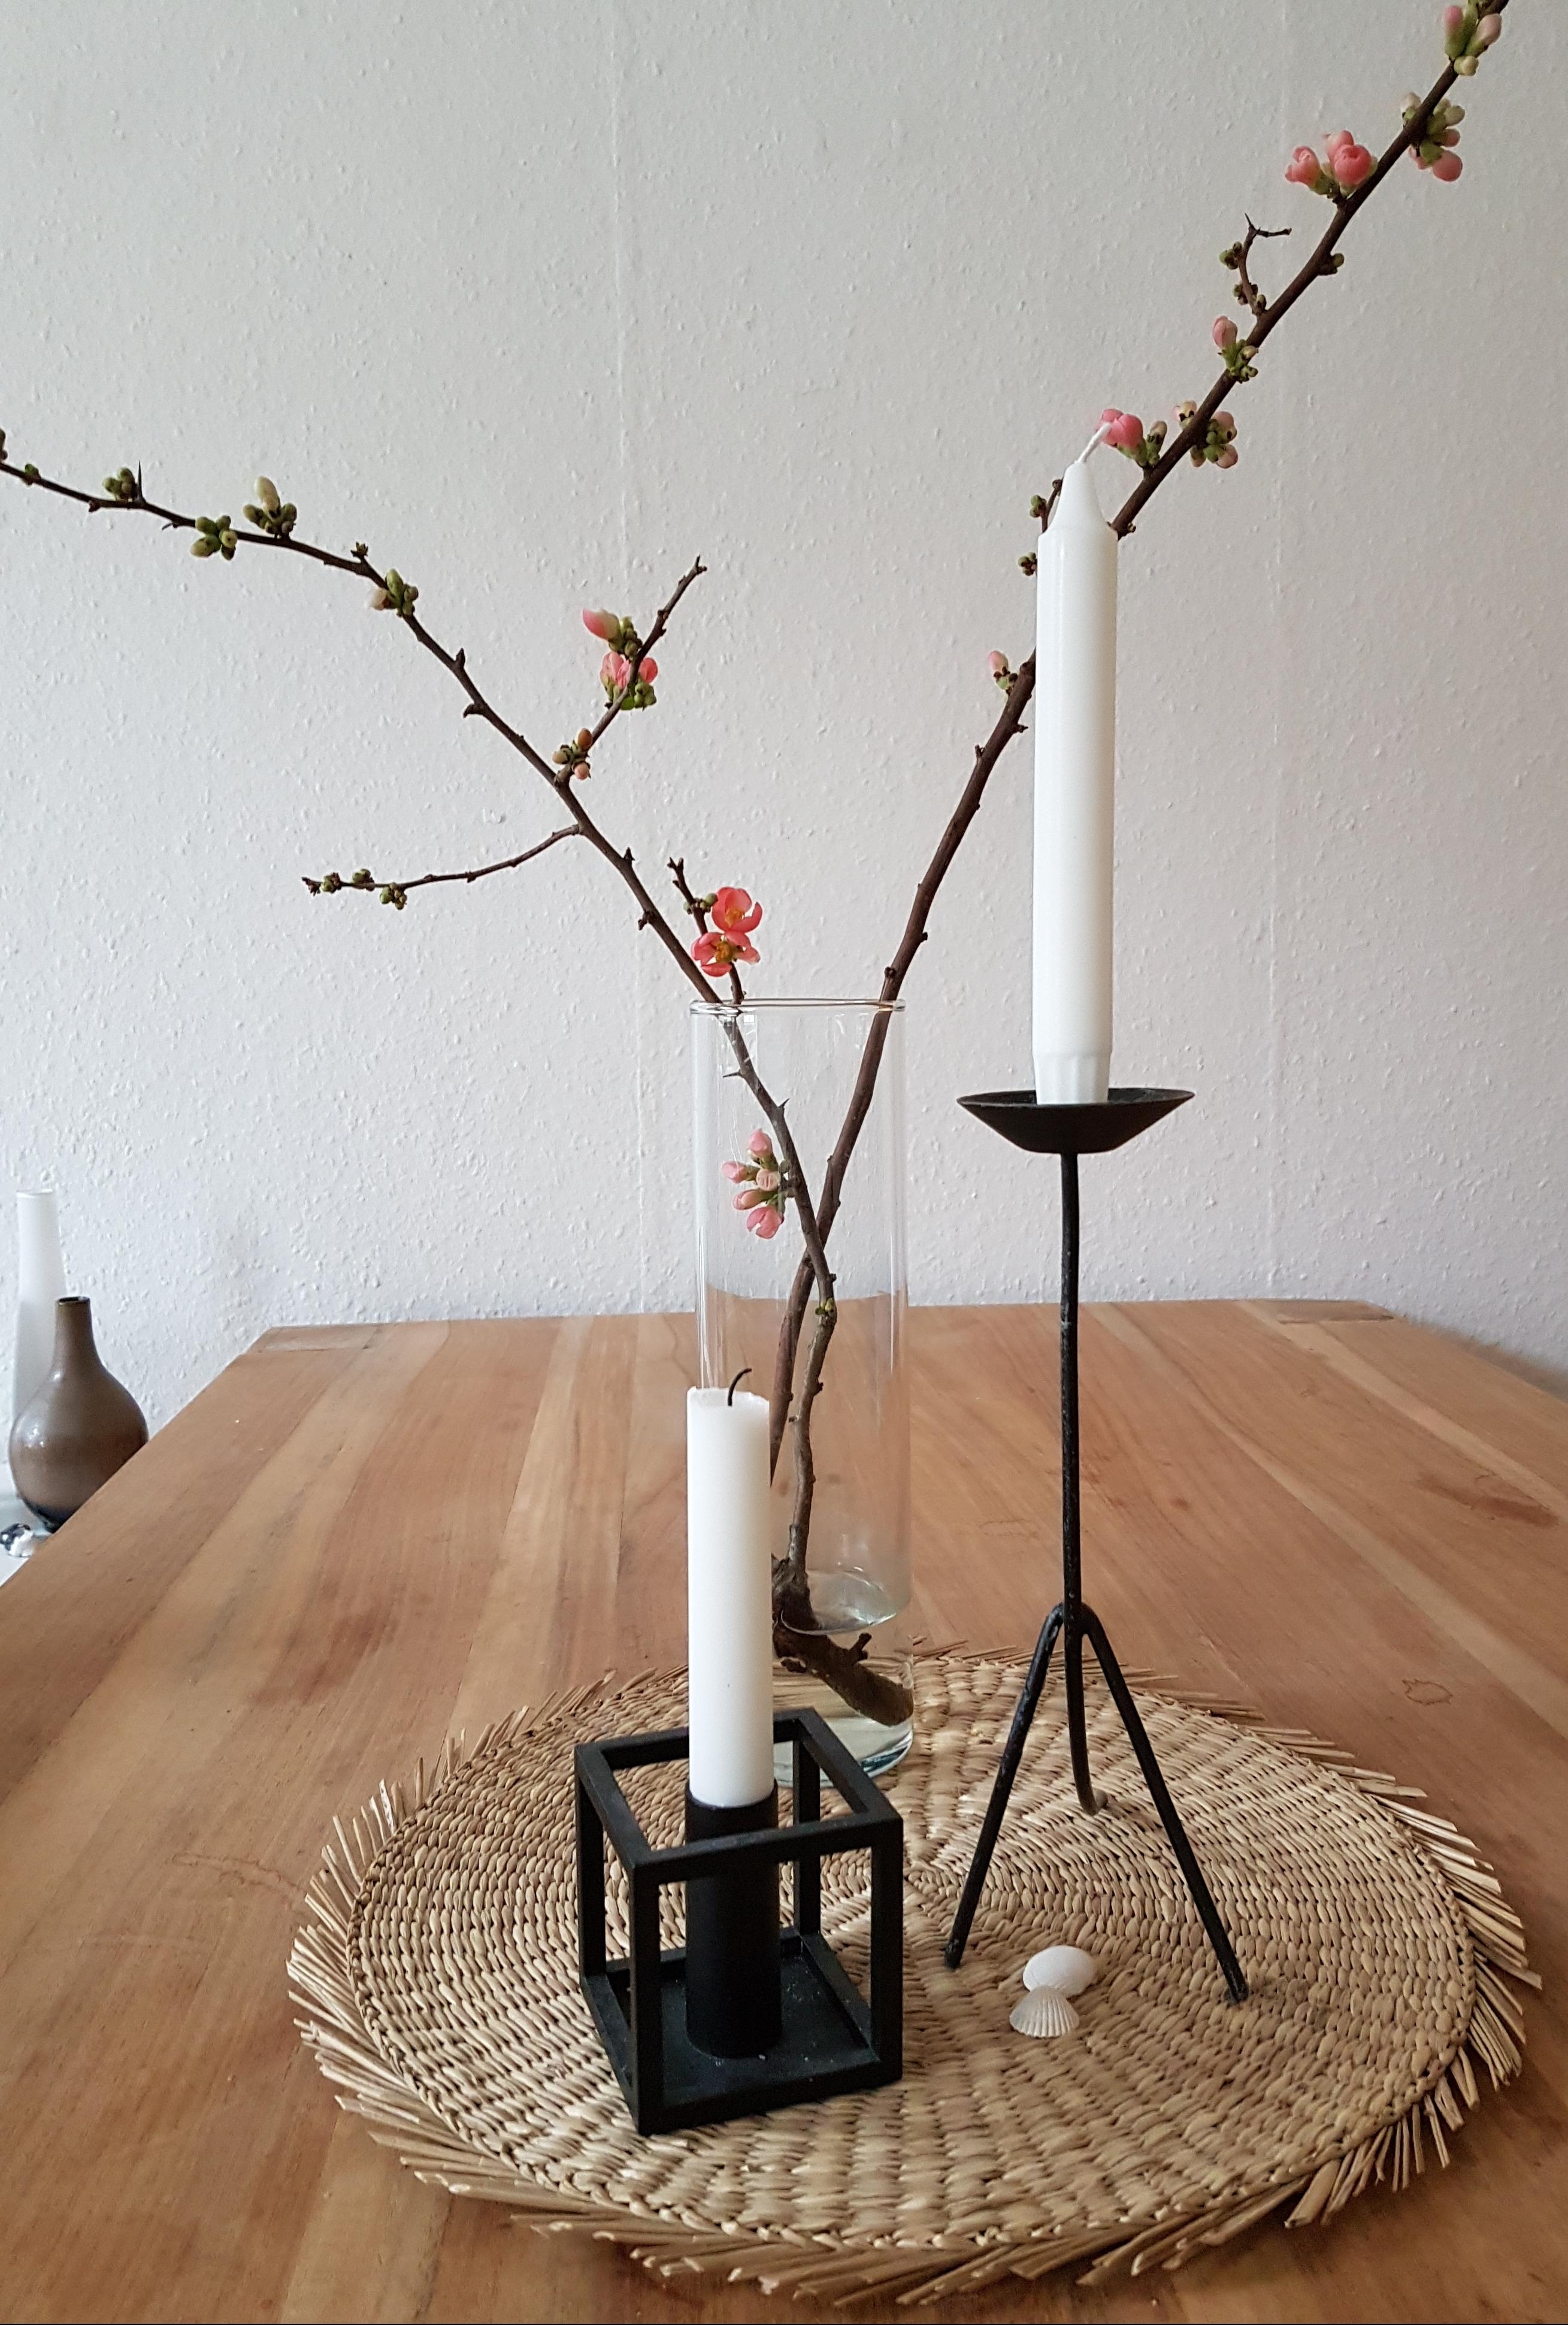 Ein Hauch von Frühling in der Wohnung  🌸 
#Frühling #Blumen #Blumenliebe #Kerzen #minimalismus #minimalist 